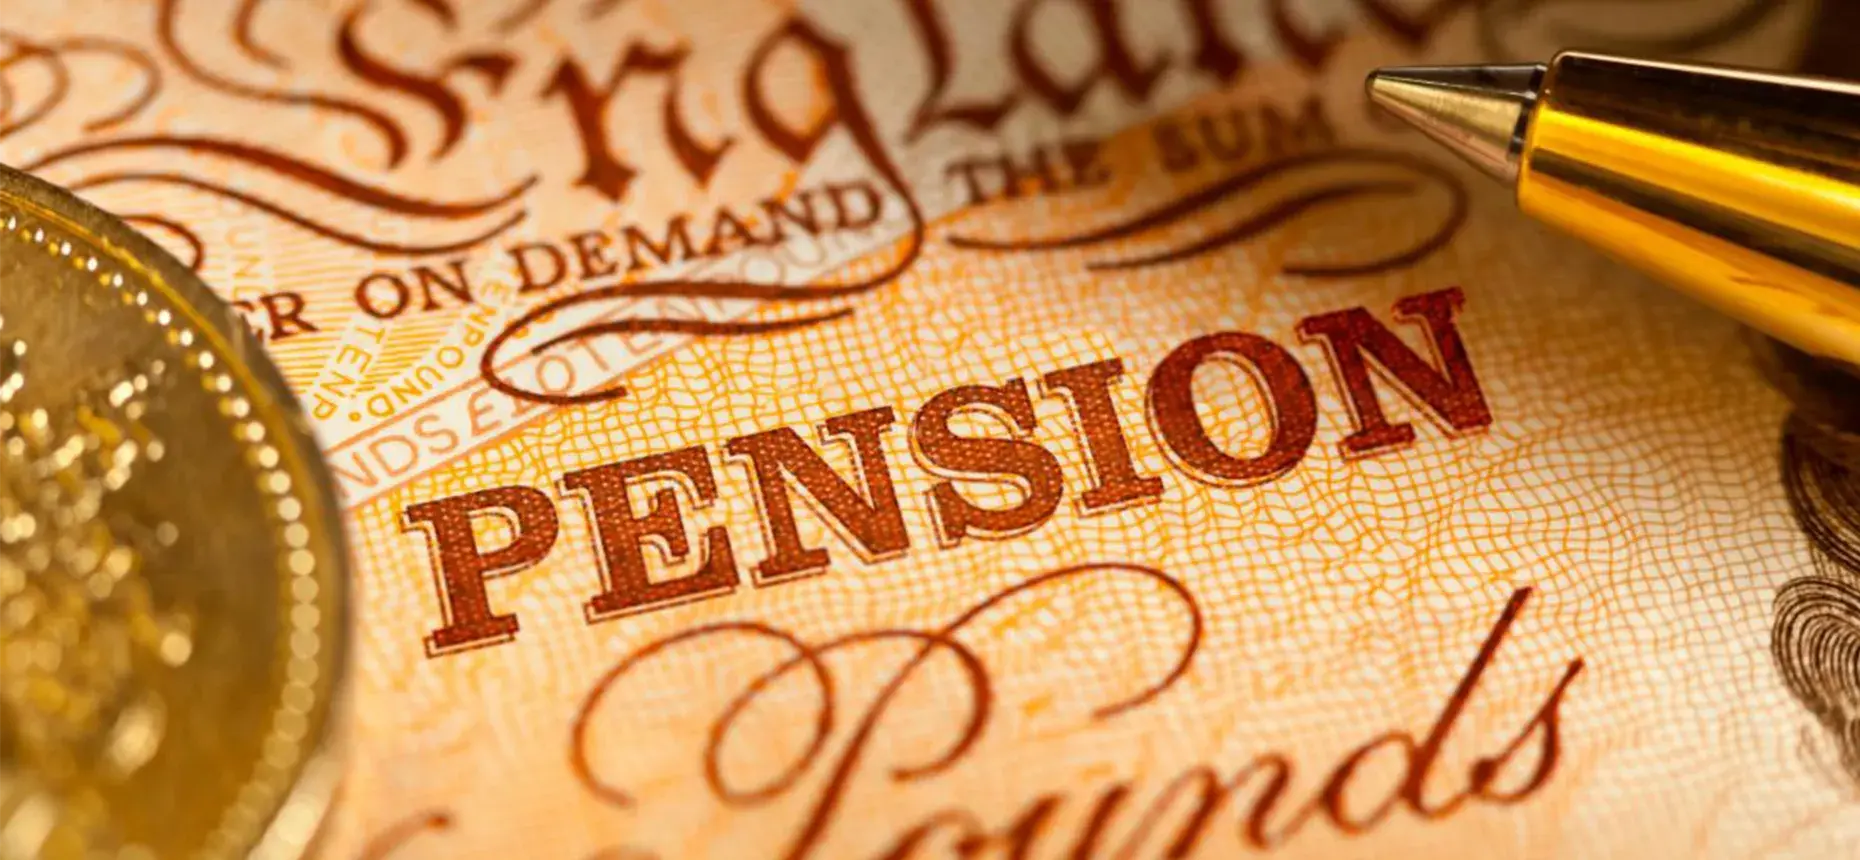 Pension reform - the pensions pendulum